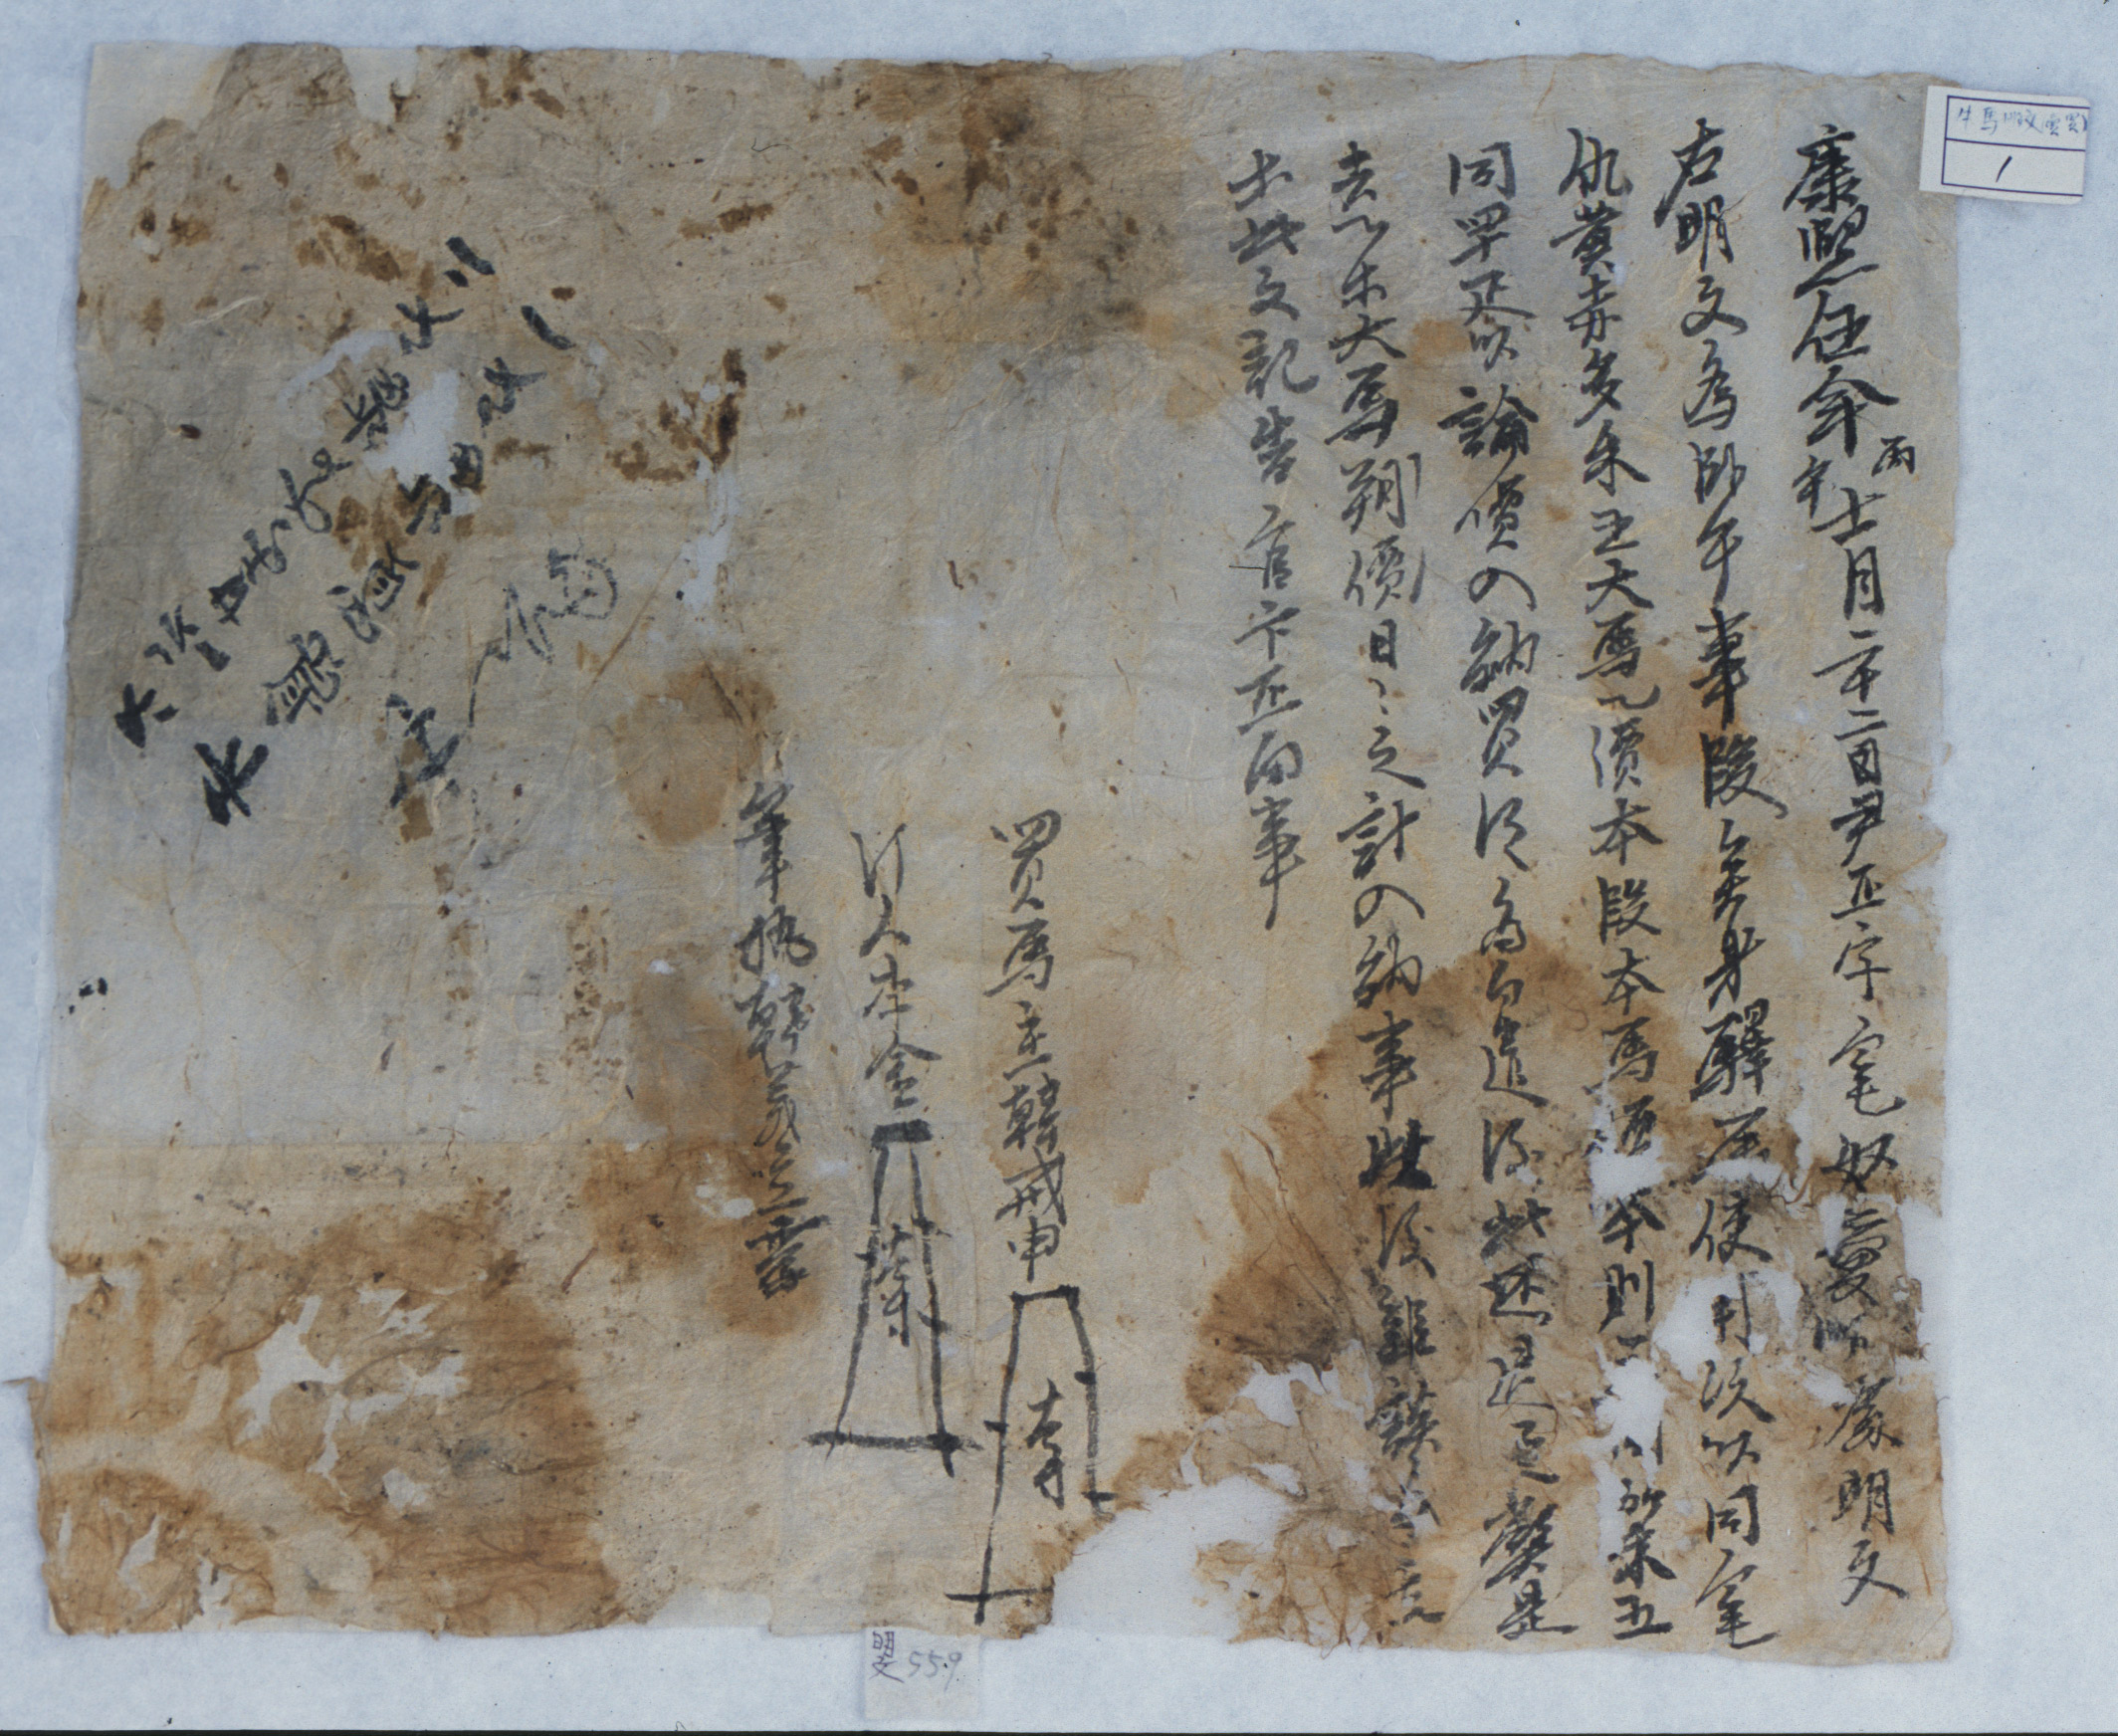 1666년에 한계신이 윤진사댁에 말을 구입하면서 작성해 준 우마문기(牛馬文記)